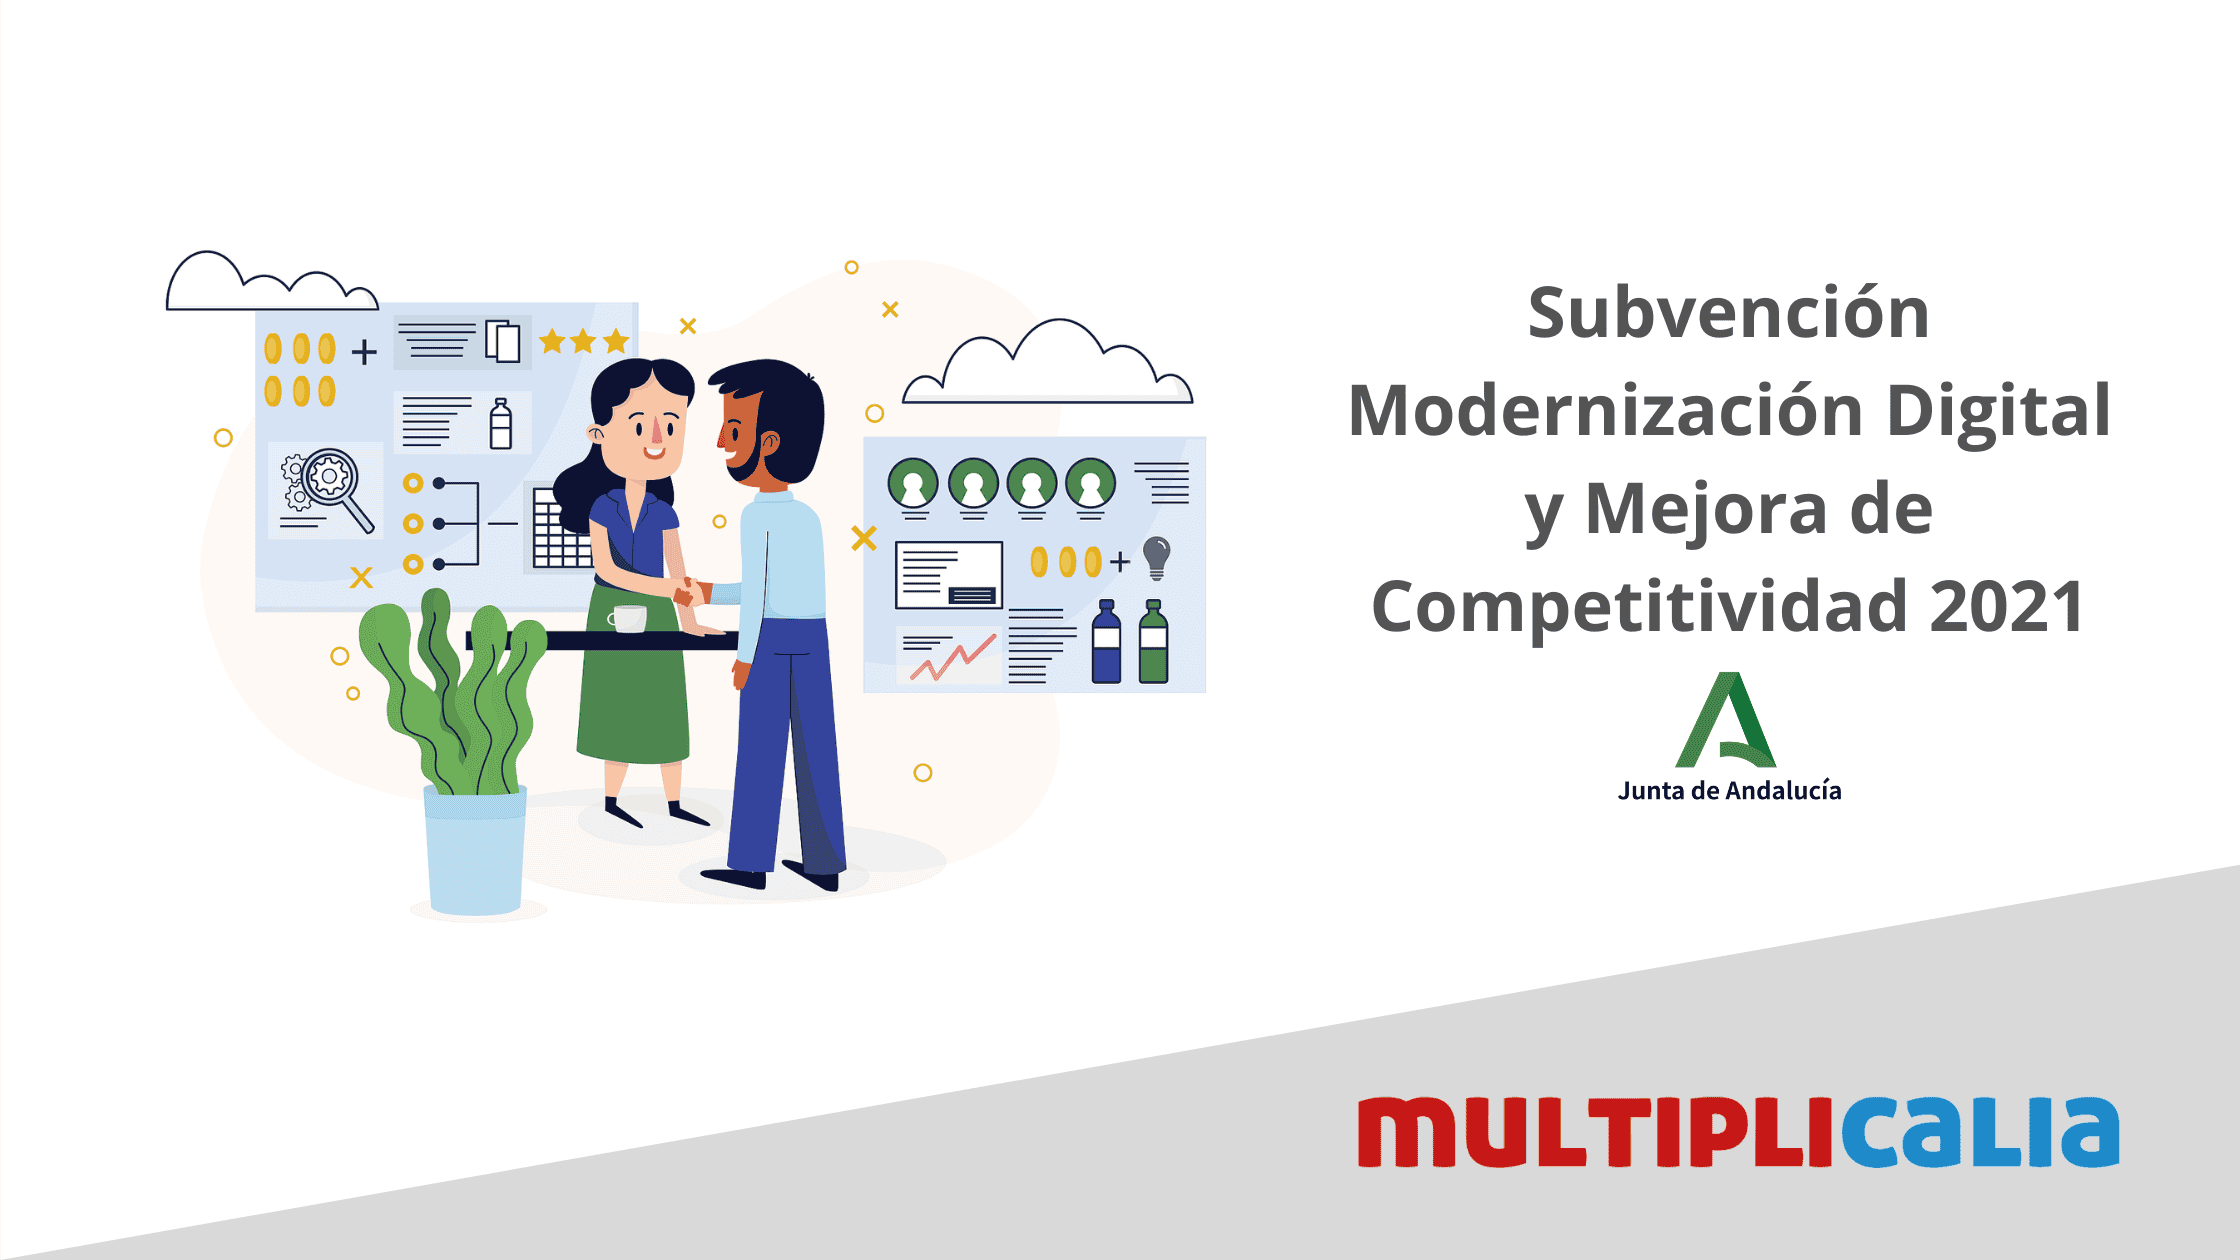 Subvención Modernización Digital y Mejora de Competitividad 2021 - Multiplicalia, expertos en marketing digital